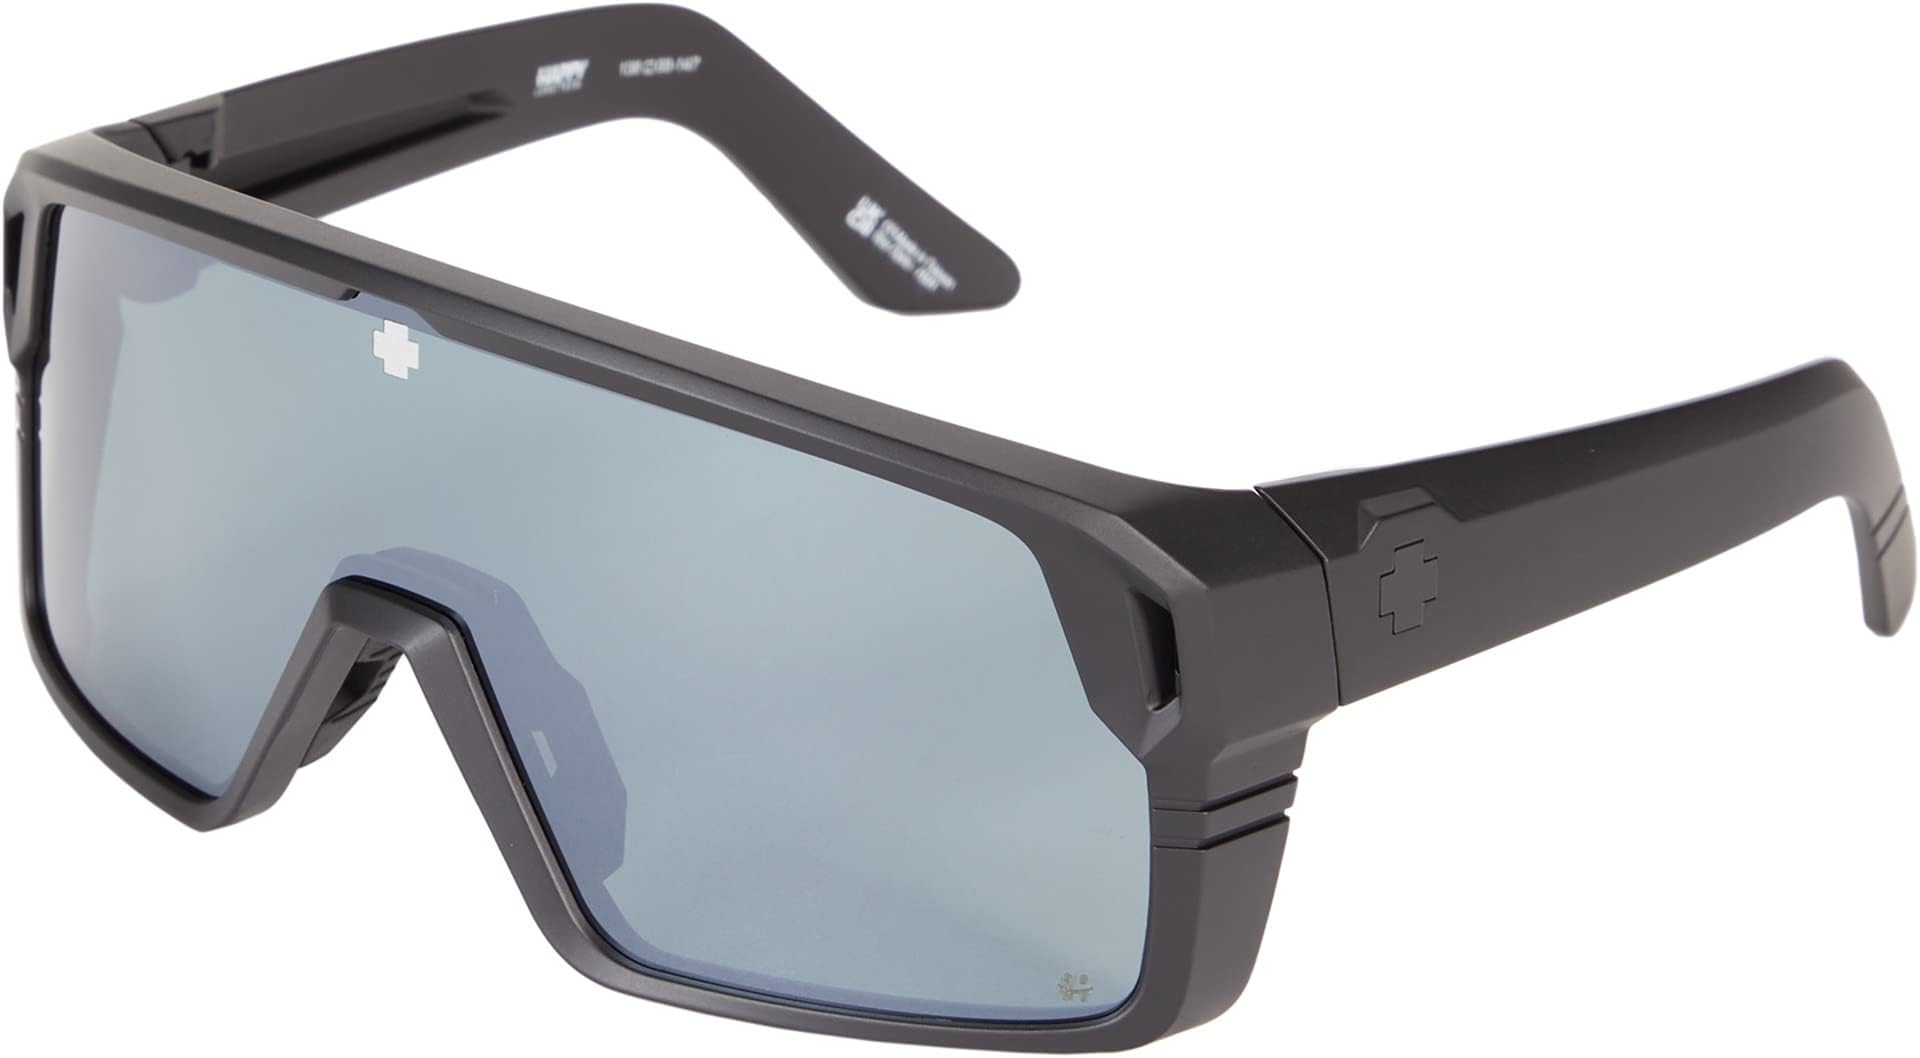 Солнцезащитные очки Monolith Spy Optic, цвет Matte Black/Happy Gray Green Black Spectra Mirror